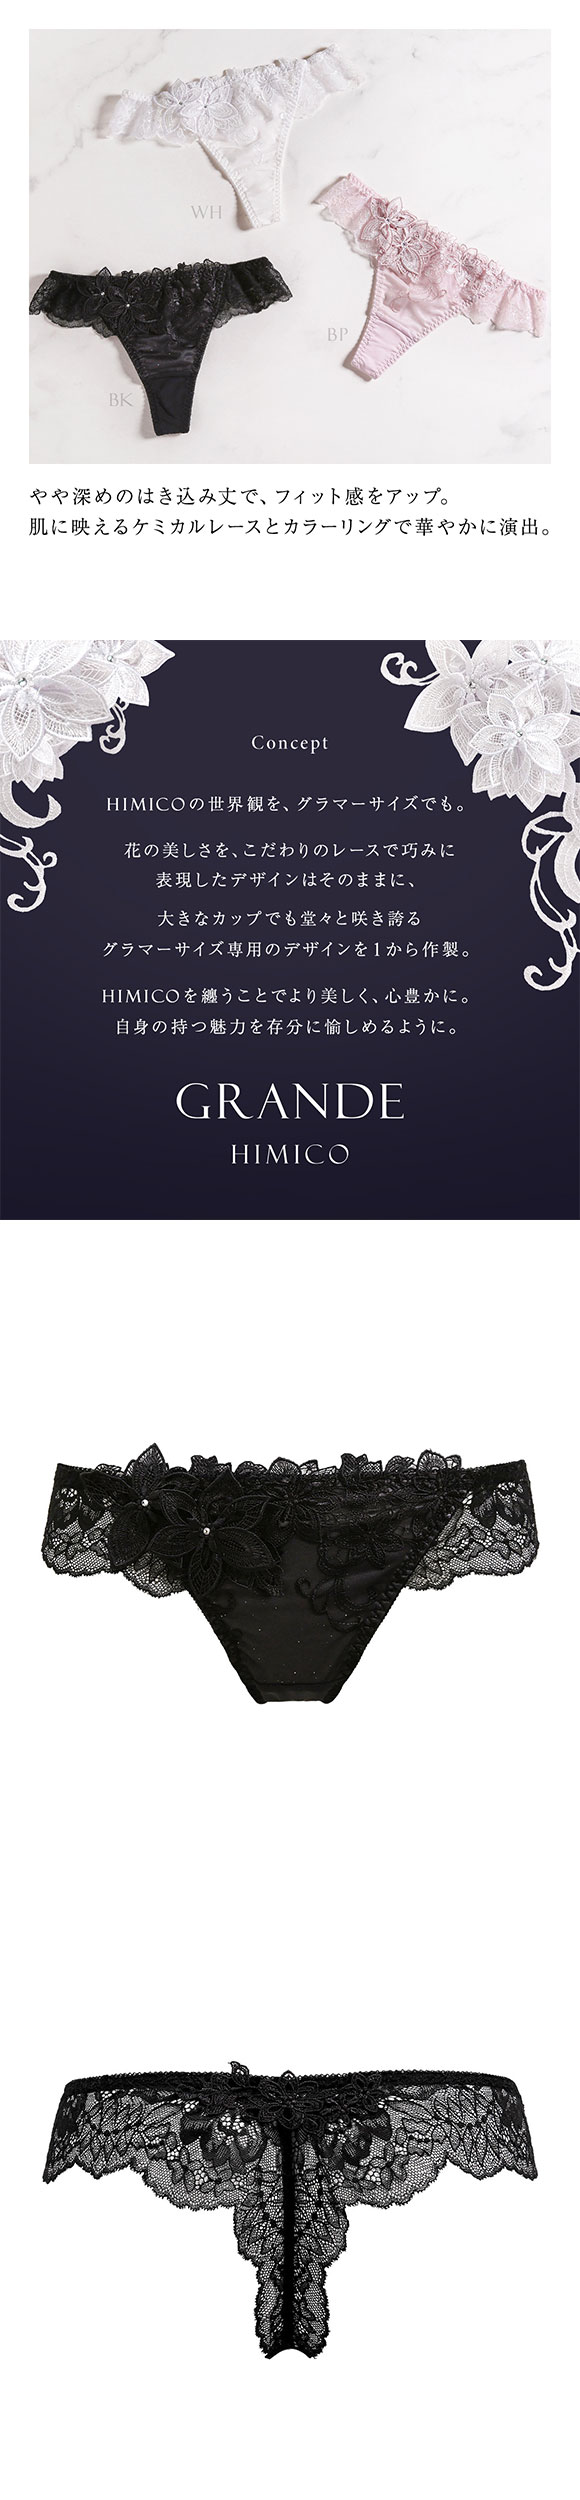 HIMICO GRANDE 003 ショーツ Tバック M L LL グラマー 大きいサイズ Dalia Stellato 単品 総レース ソング タンガ